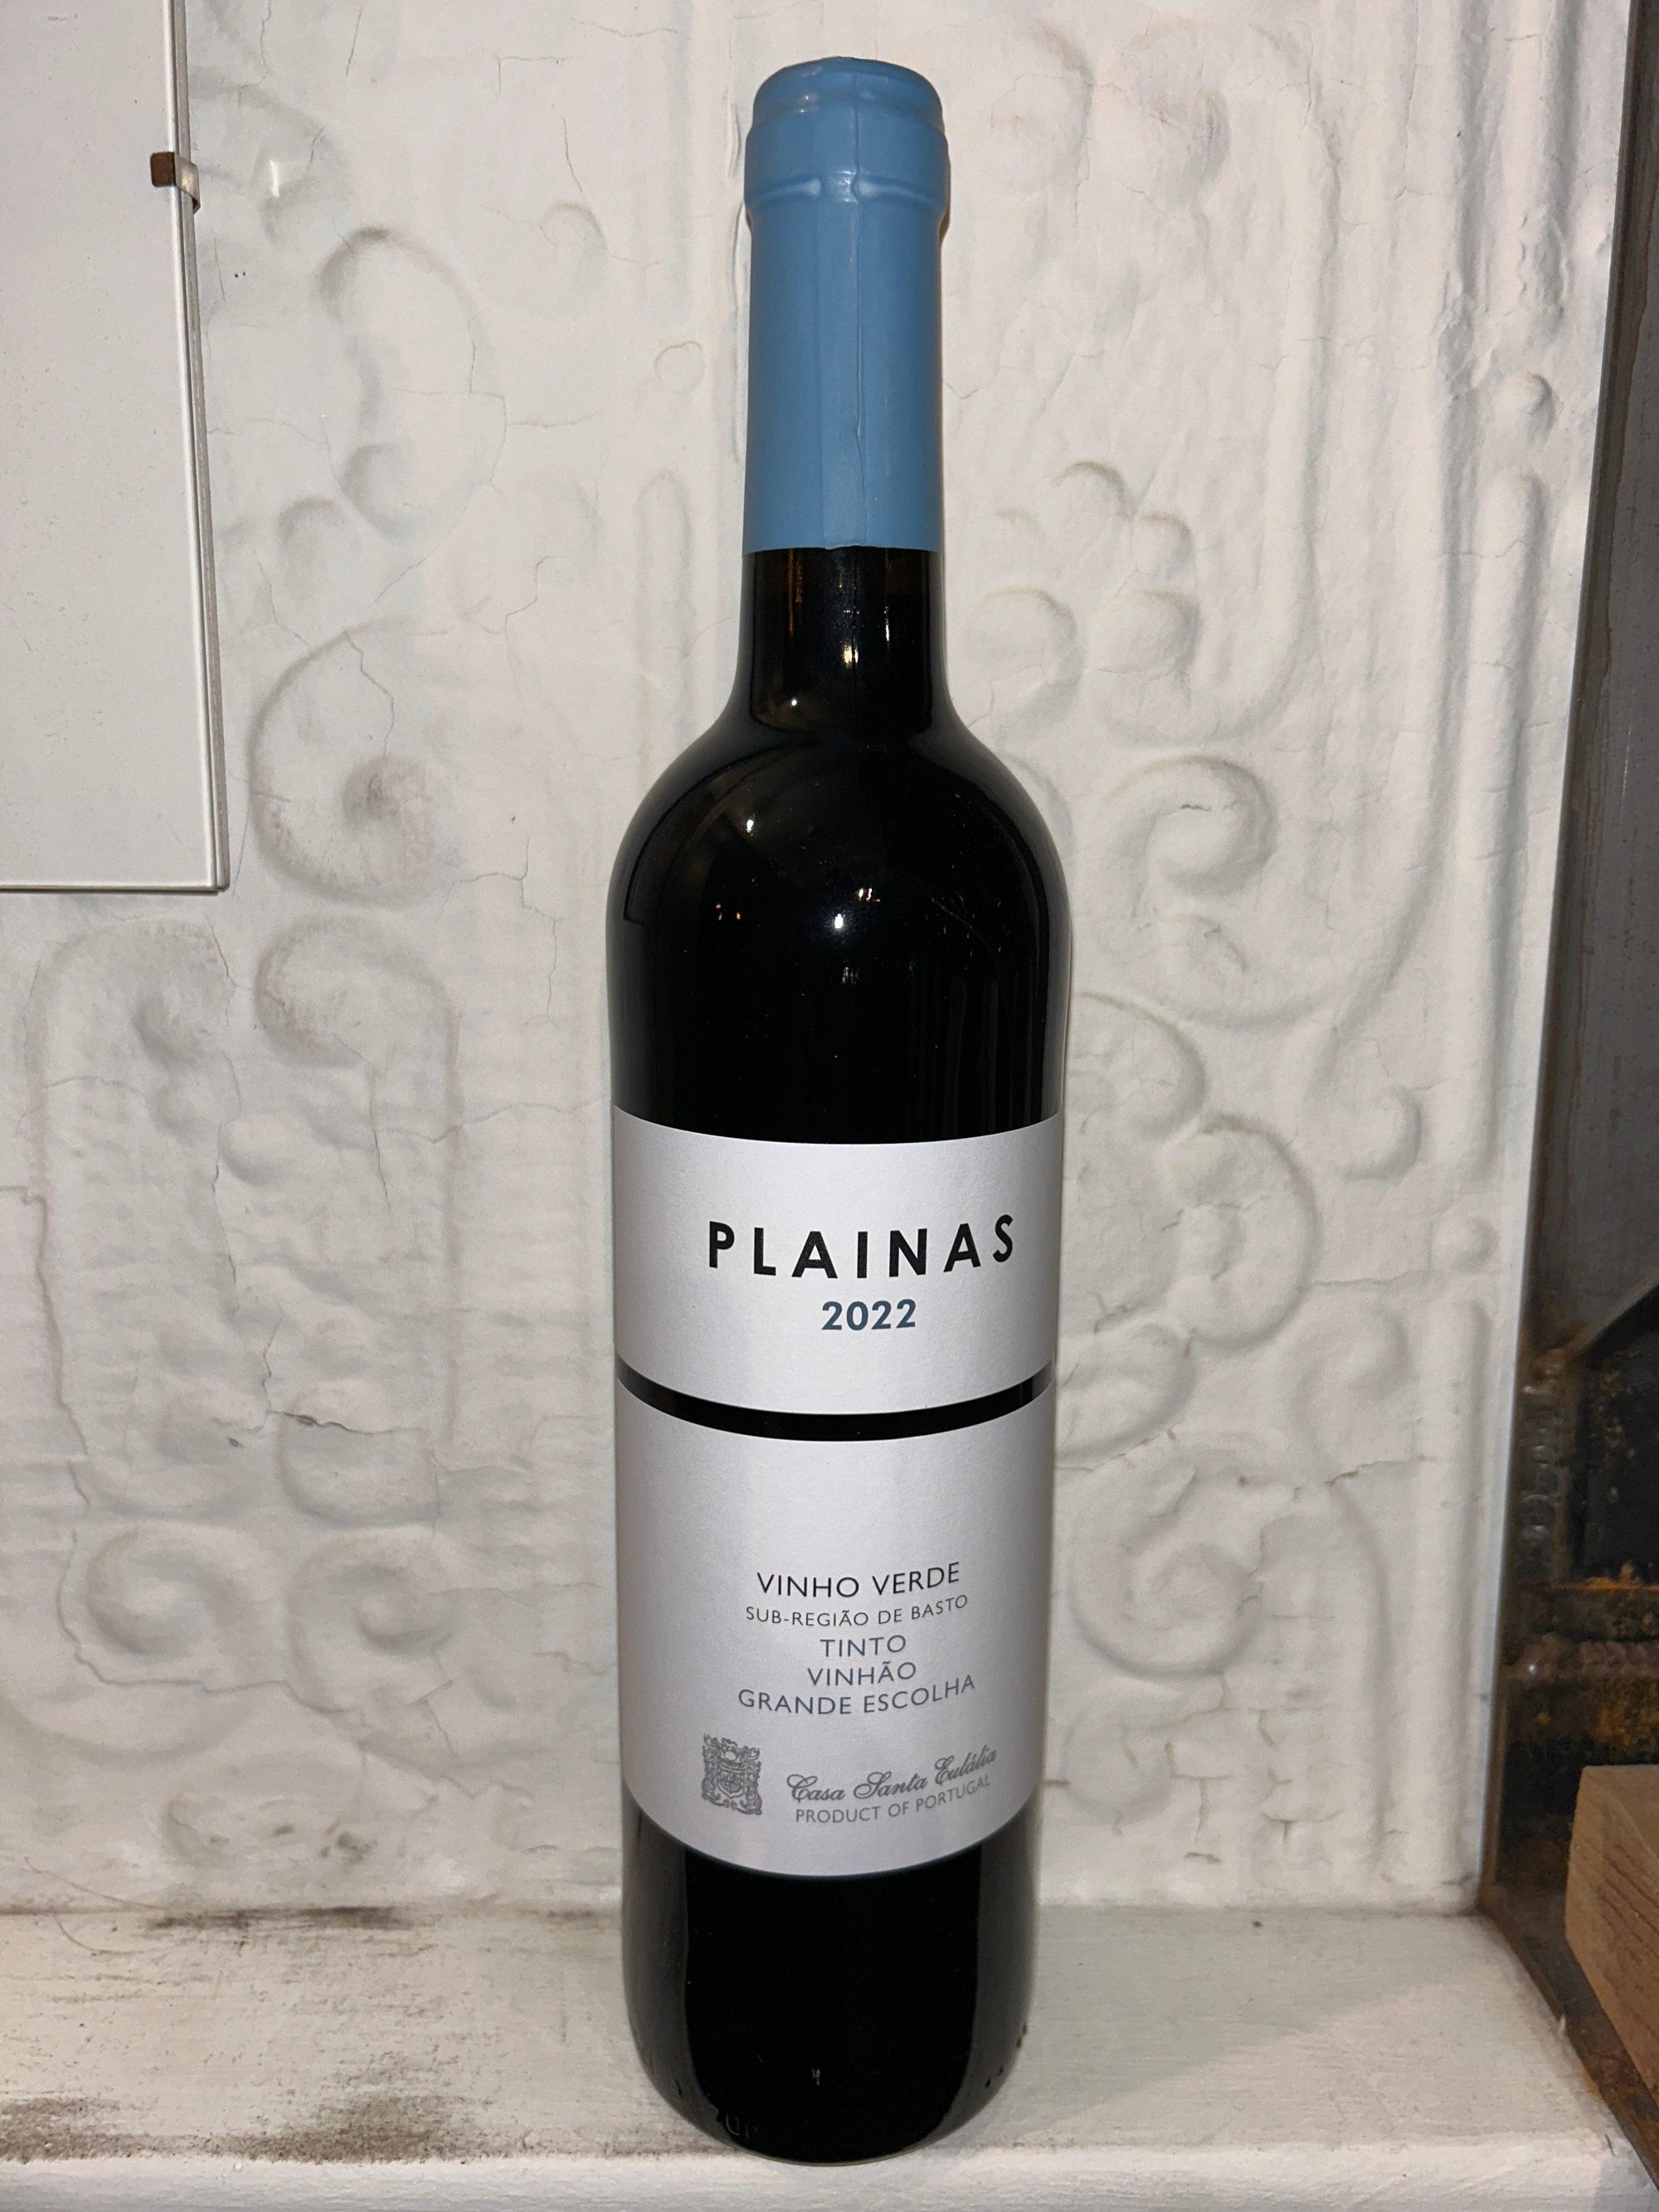 Plainas Tinto, Casa Santa Eulalia 2022 (Vinho Verde, Portugal)-Wine-Bibber & Bell